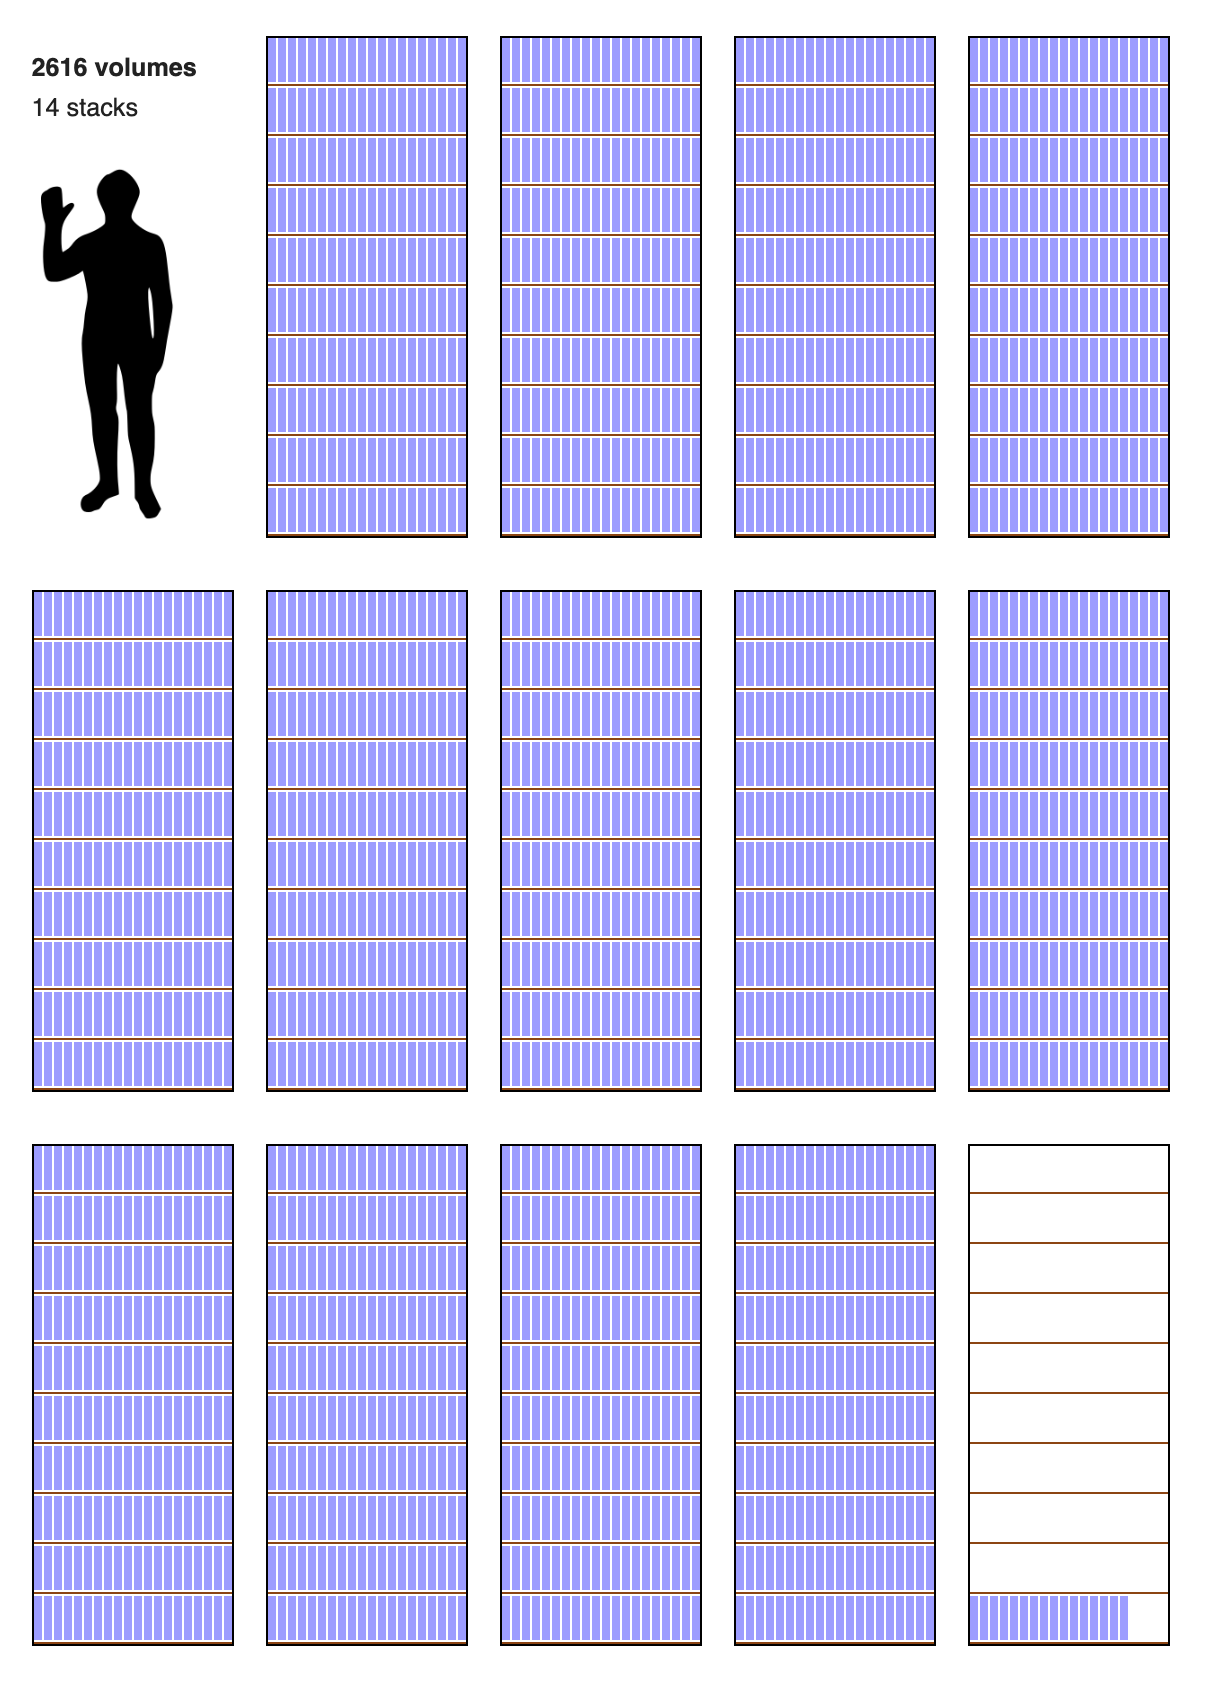 Die aktuelle Größe der englischen Wikipedia (ohne Bilder) in Druckvolumen, per mathematischer Berechnung